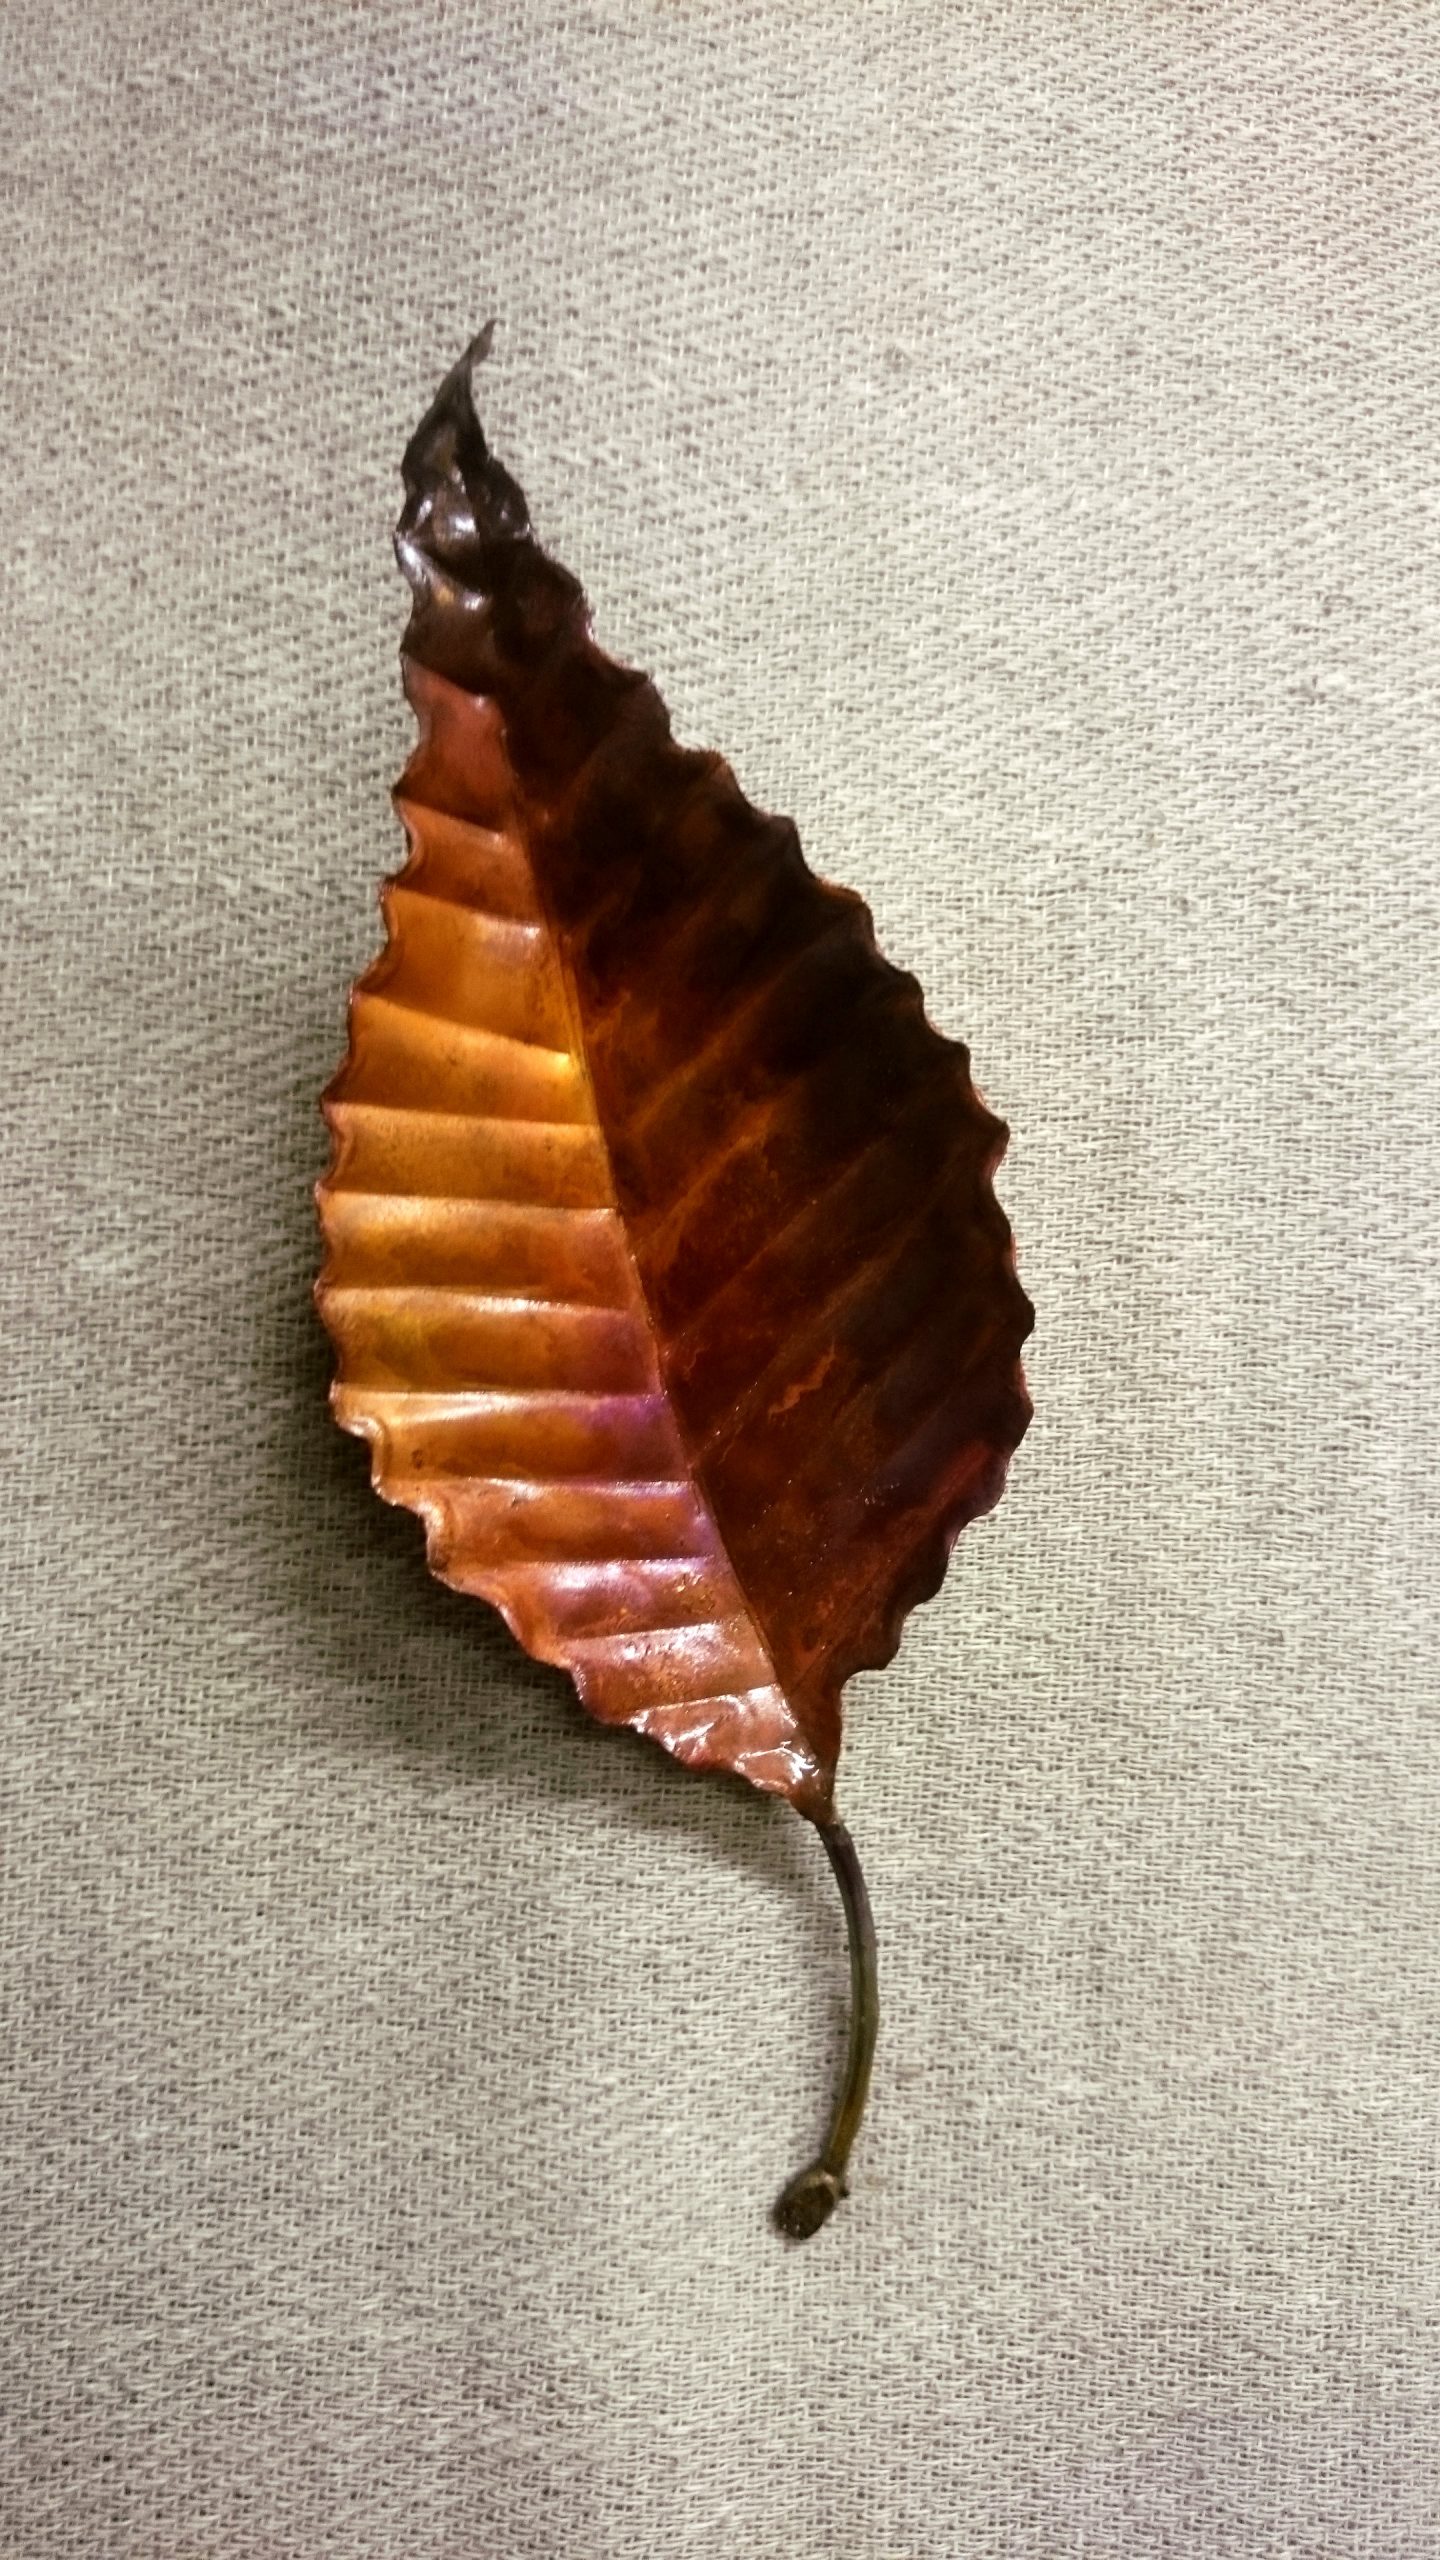 elm leaf sculpture